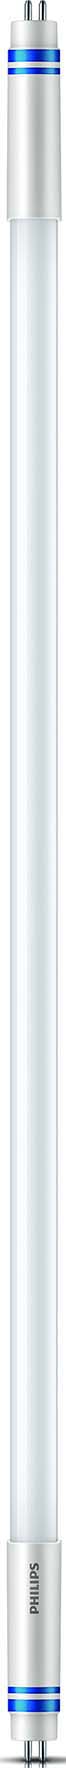 Philips Lighting LED-Tube T5 f. EVG G5, 840, 1149mm MASLEDtube#74331700 günstig online kaufen